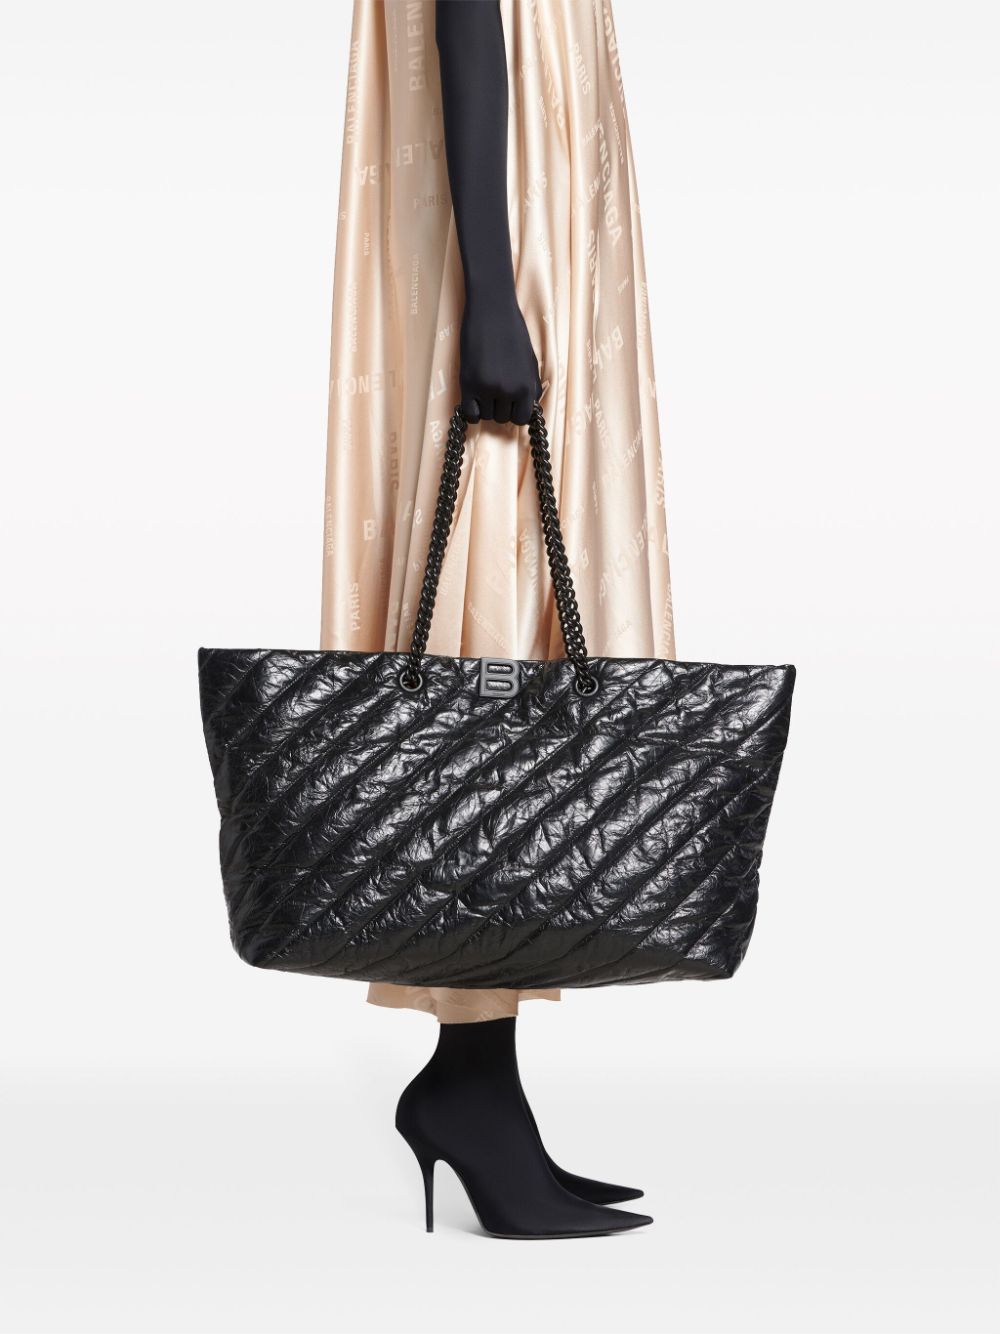 حقيبة كتف جلدية مطرزة بلون أسود مع تفاصيل معدنية، مقابض سلسلة مزدوجة وجيب داخلي بسحاب للنساء